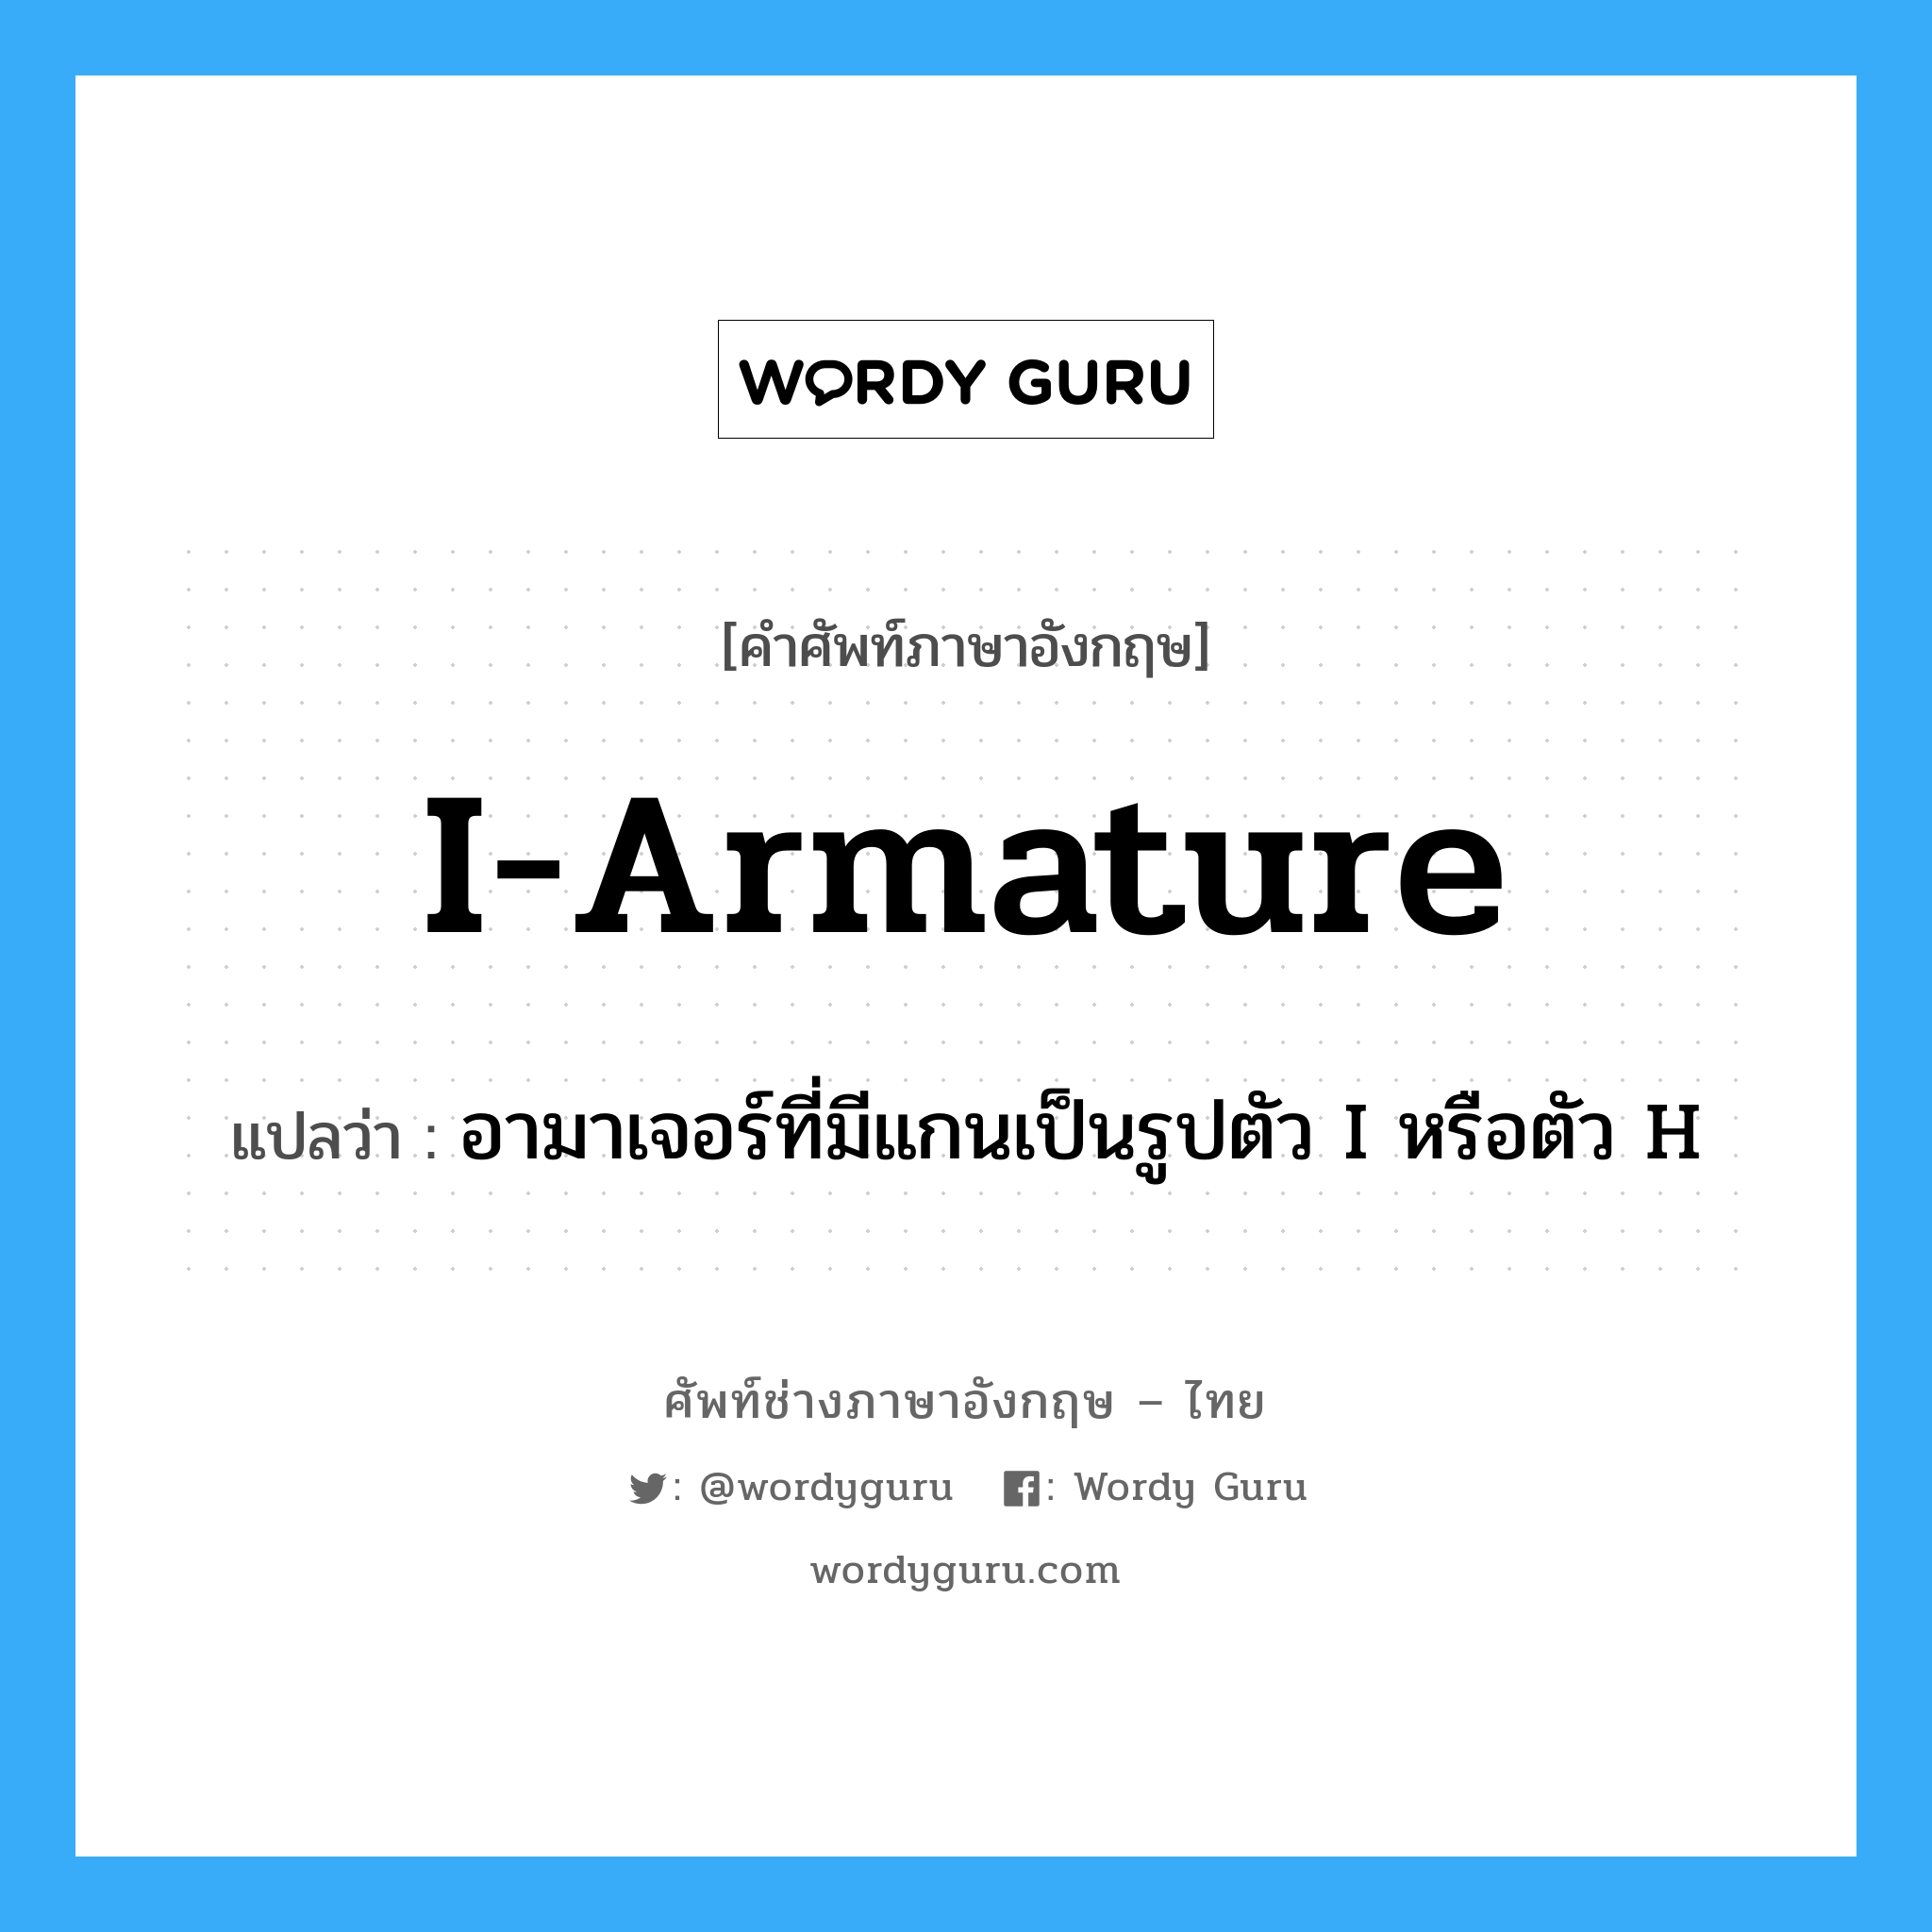 I-armature แปลว่า?, คำศัพท์ช่างภาษาอังกฤษ - ไทย I-armature คำศัพท์ภาษาอังกฤษ I-armature แปลว่า อามาเจอร์ที่มีแกนเป็นรูปตัว I หรือตัว H